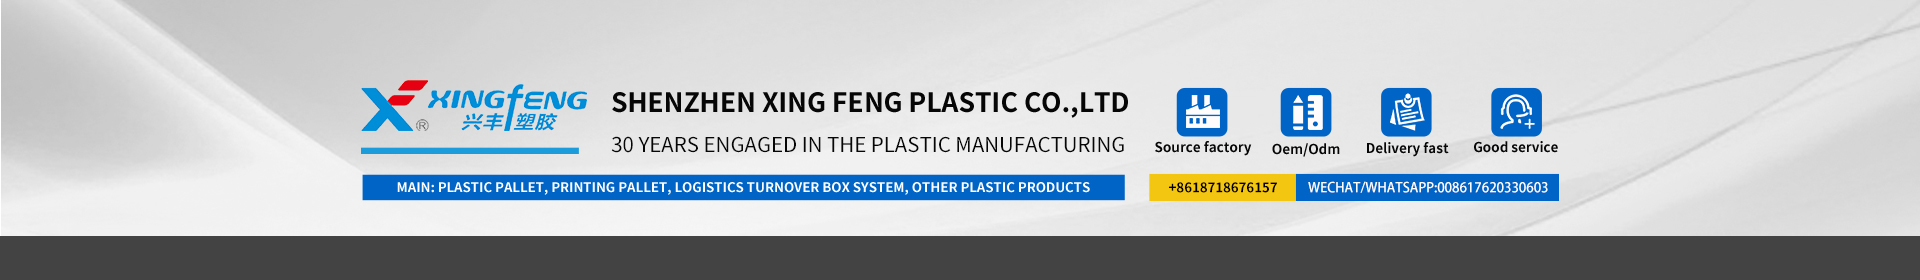 Công ty nhựa xingfeng là chuyên gia về sản phẩm nhựa trong 30 năm